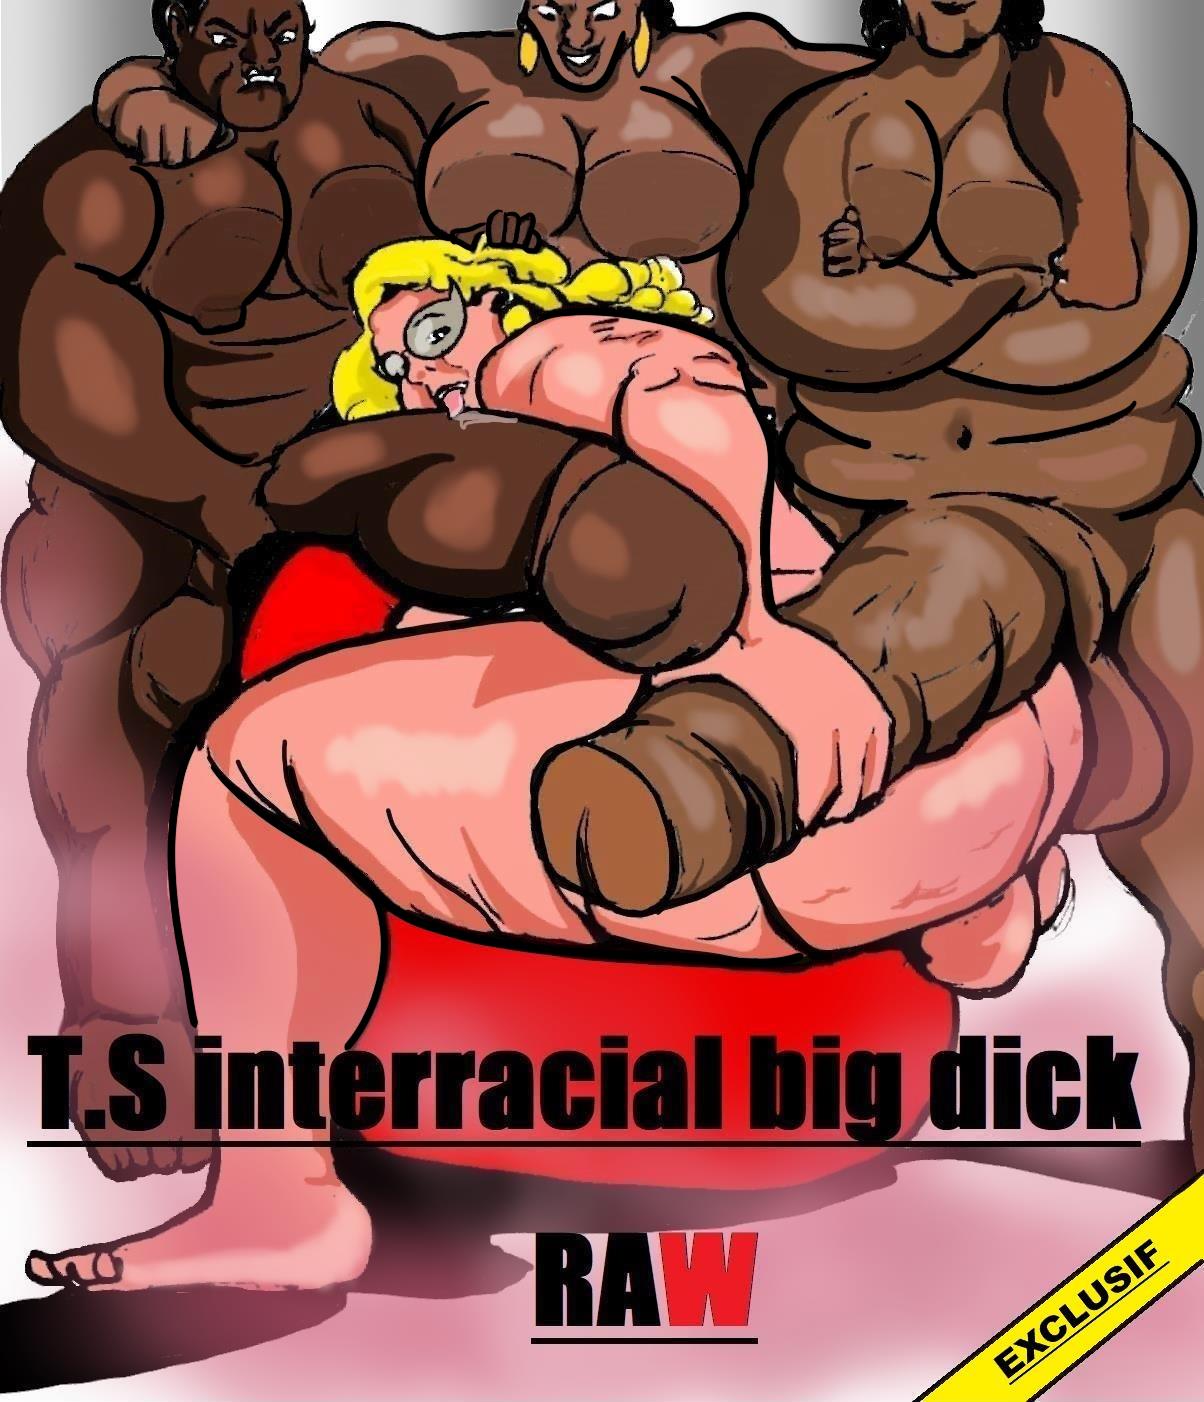 Tgirl Huge Cock Toon - Shemale Interracial Big Dick Raw- Carter Tyron - Porn Cartoon Comics